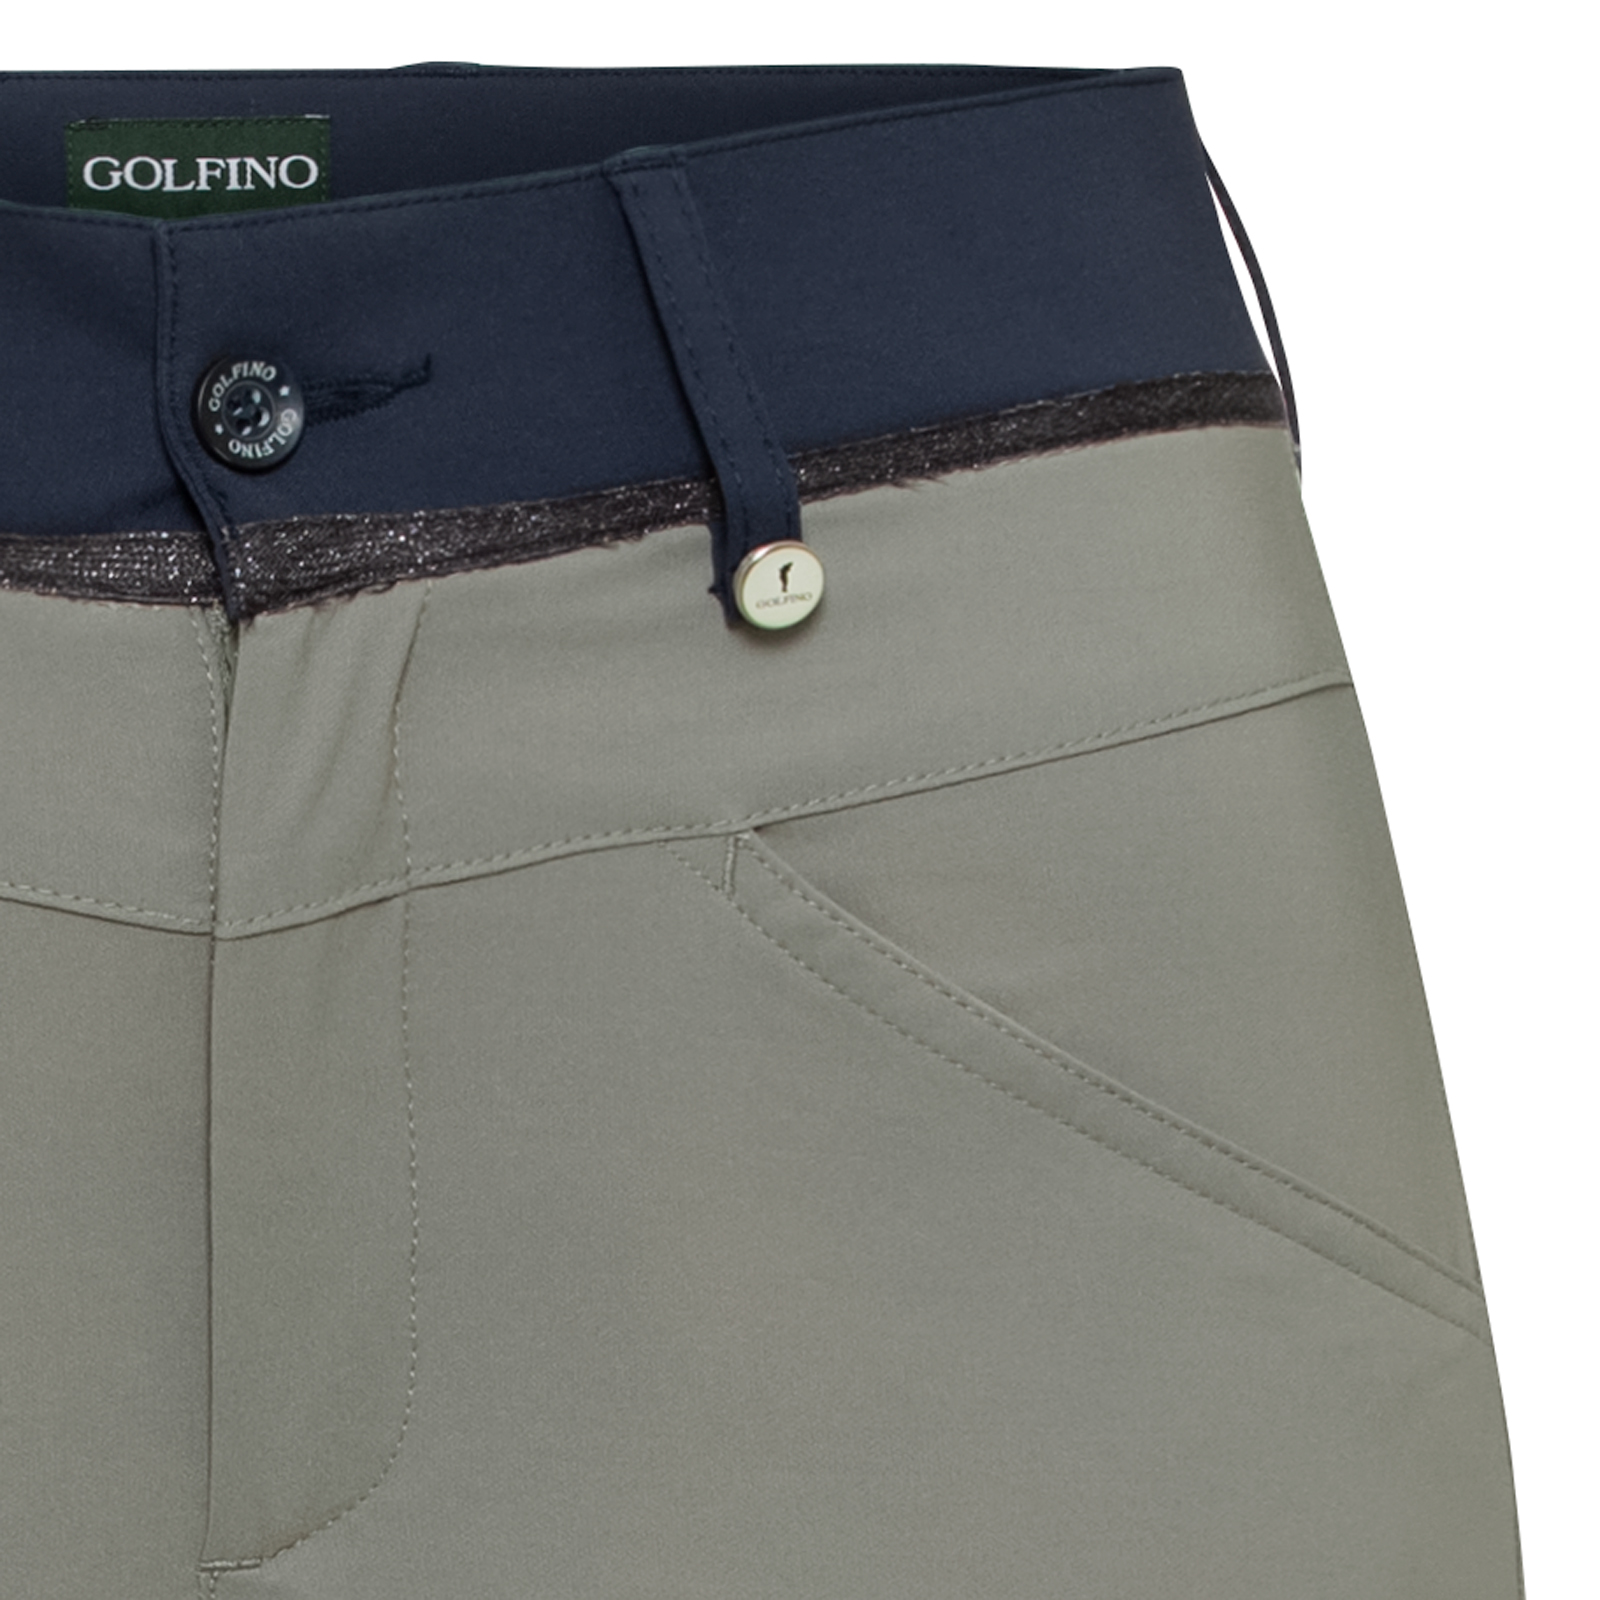 Modernos pantalones de golf 7/8 con Techno Stretch y protección contra el frío para mujer